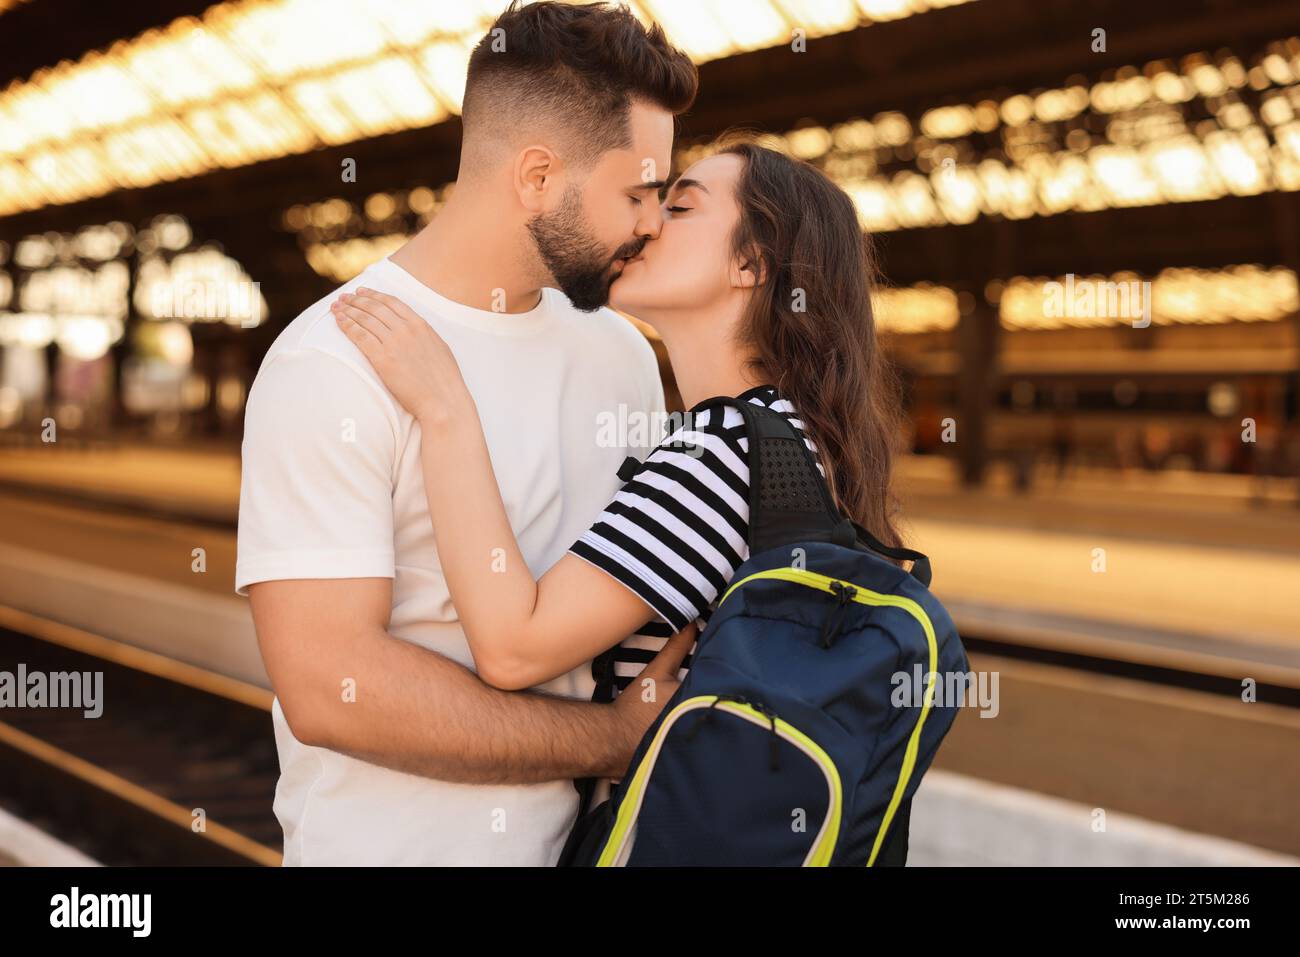 Relazione a distanza. La coppia si baciava sul binario della stazione ferroviaria Foto Stock